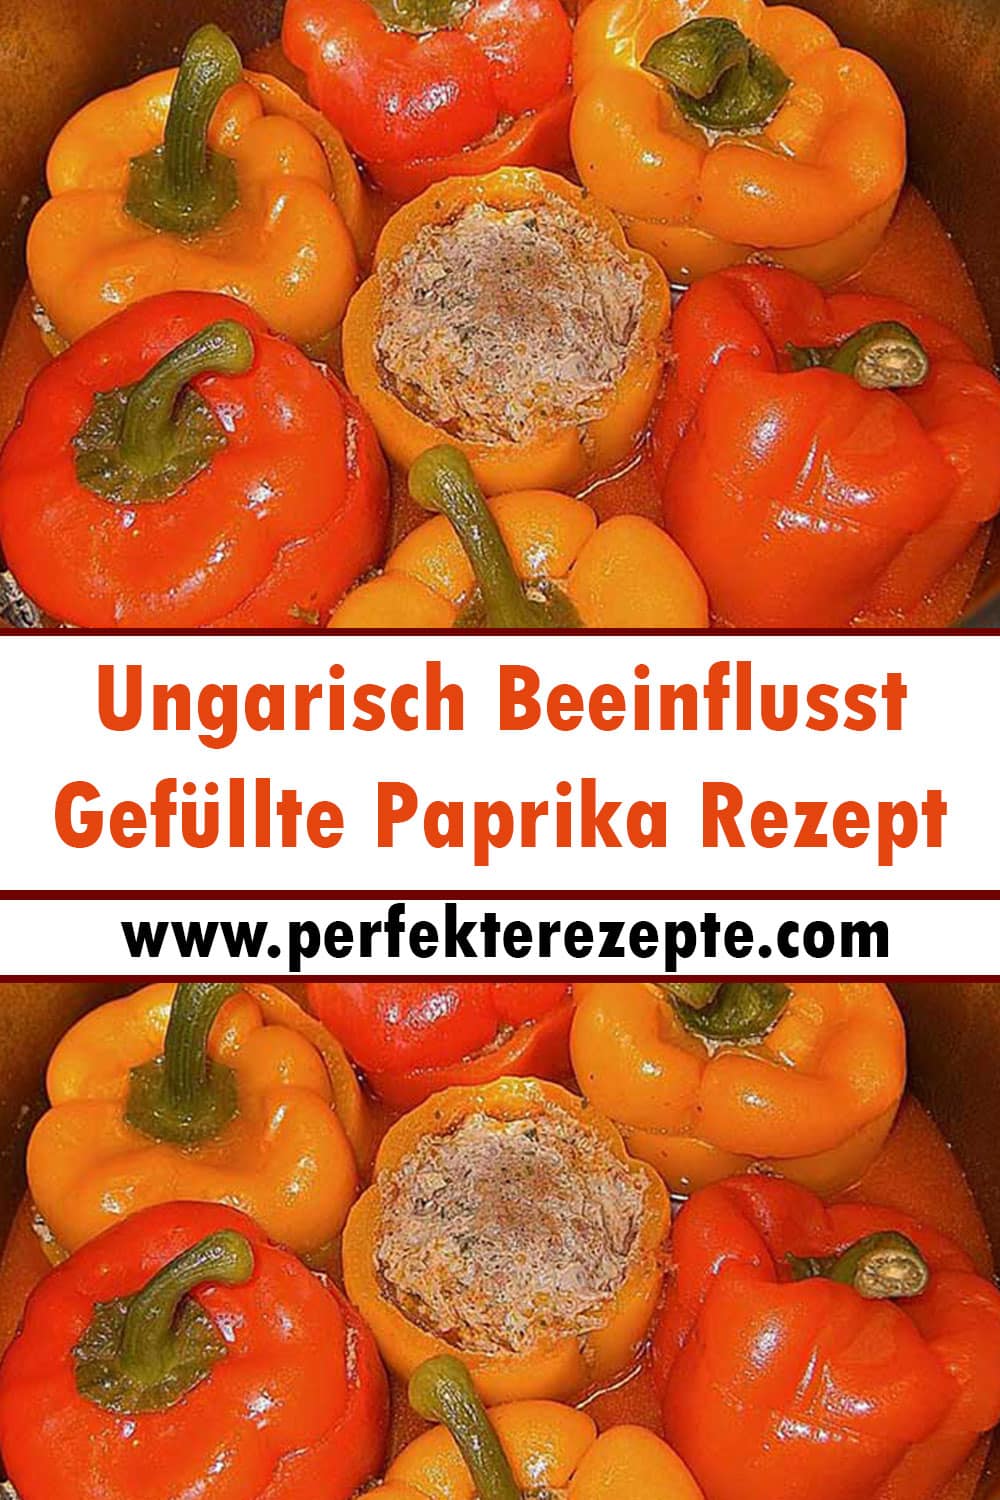 Ungarisch Beeinflusst Gefüllte Paprika Rezept